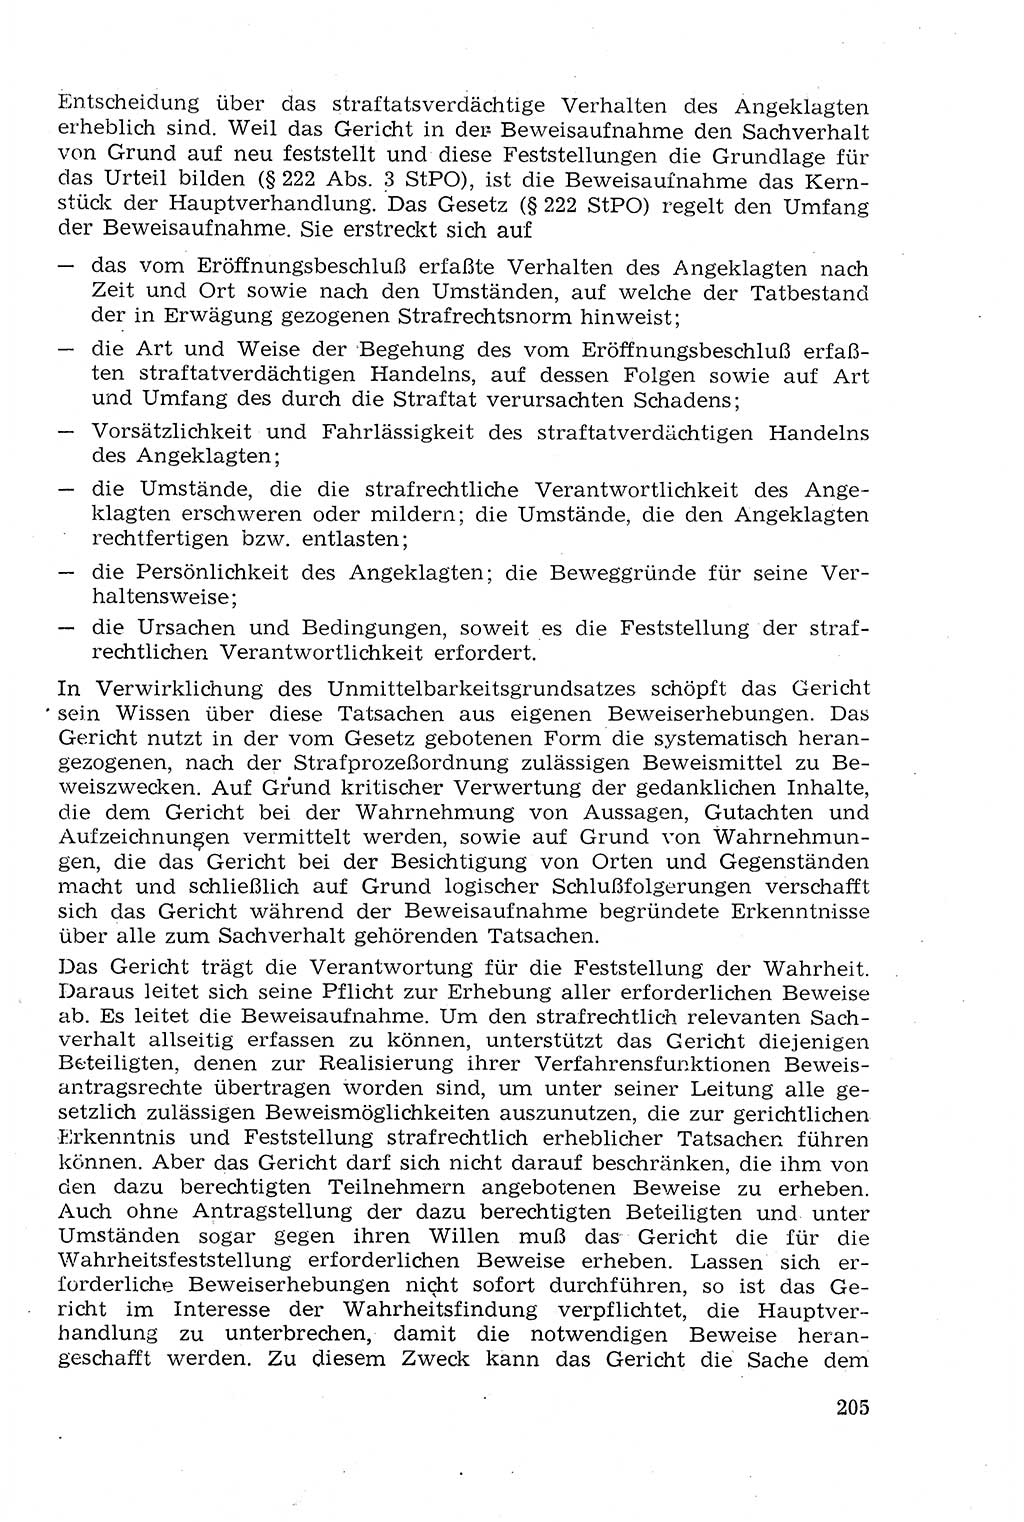 Strafprozeßrecht der DDR (Deutsche Demokratische Republik), Lehrmaterial 1969, Seite 205 (Strafprozeßr. DDR Lehrmat. 1969, S. 205)